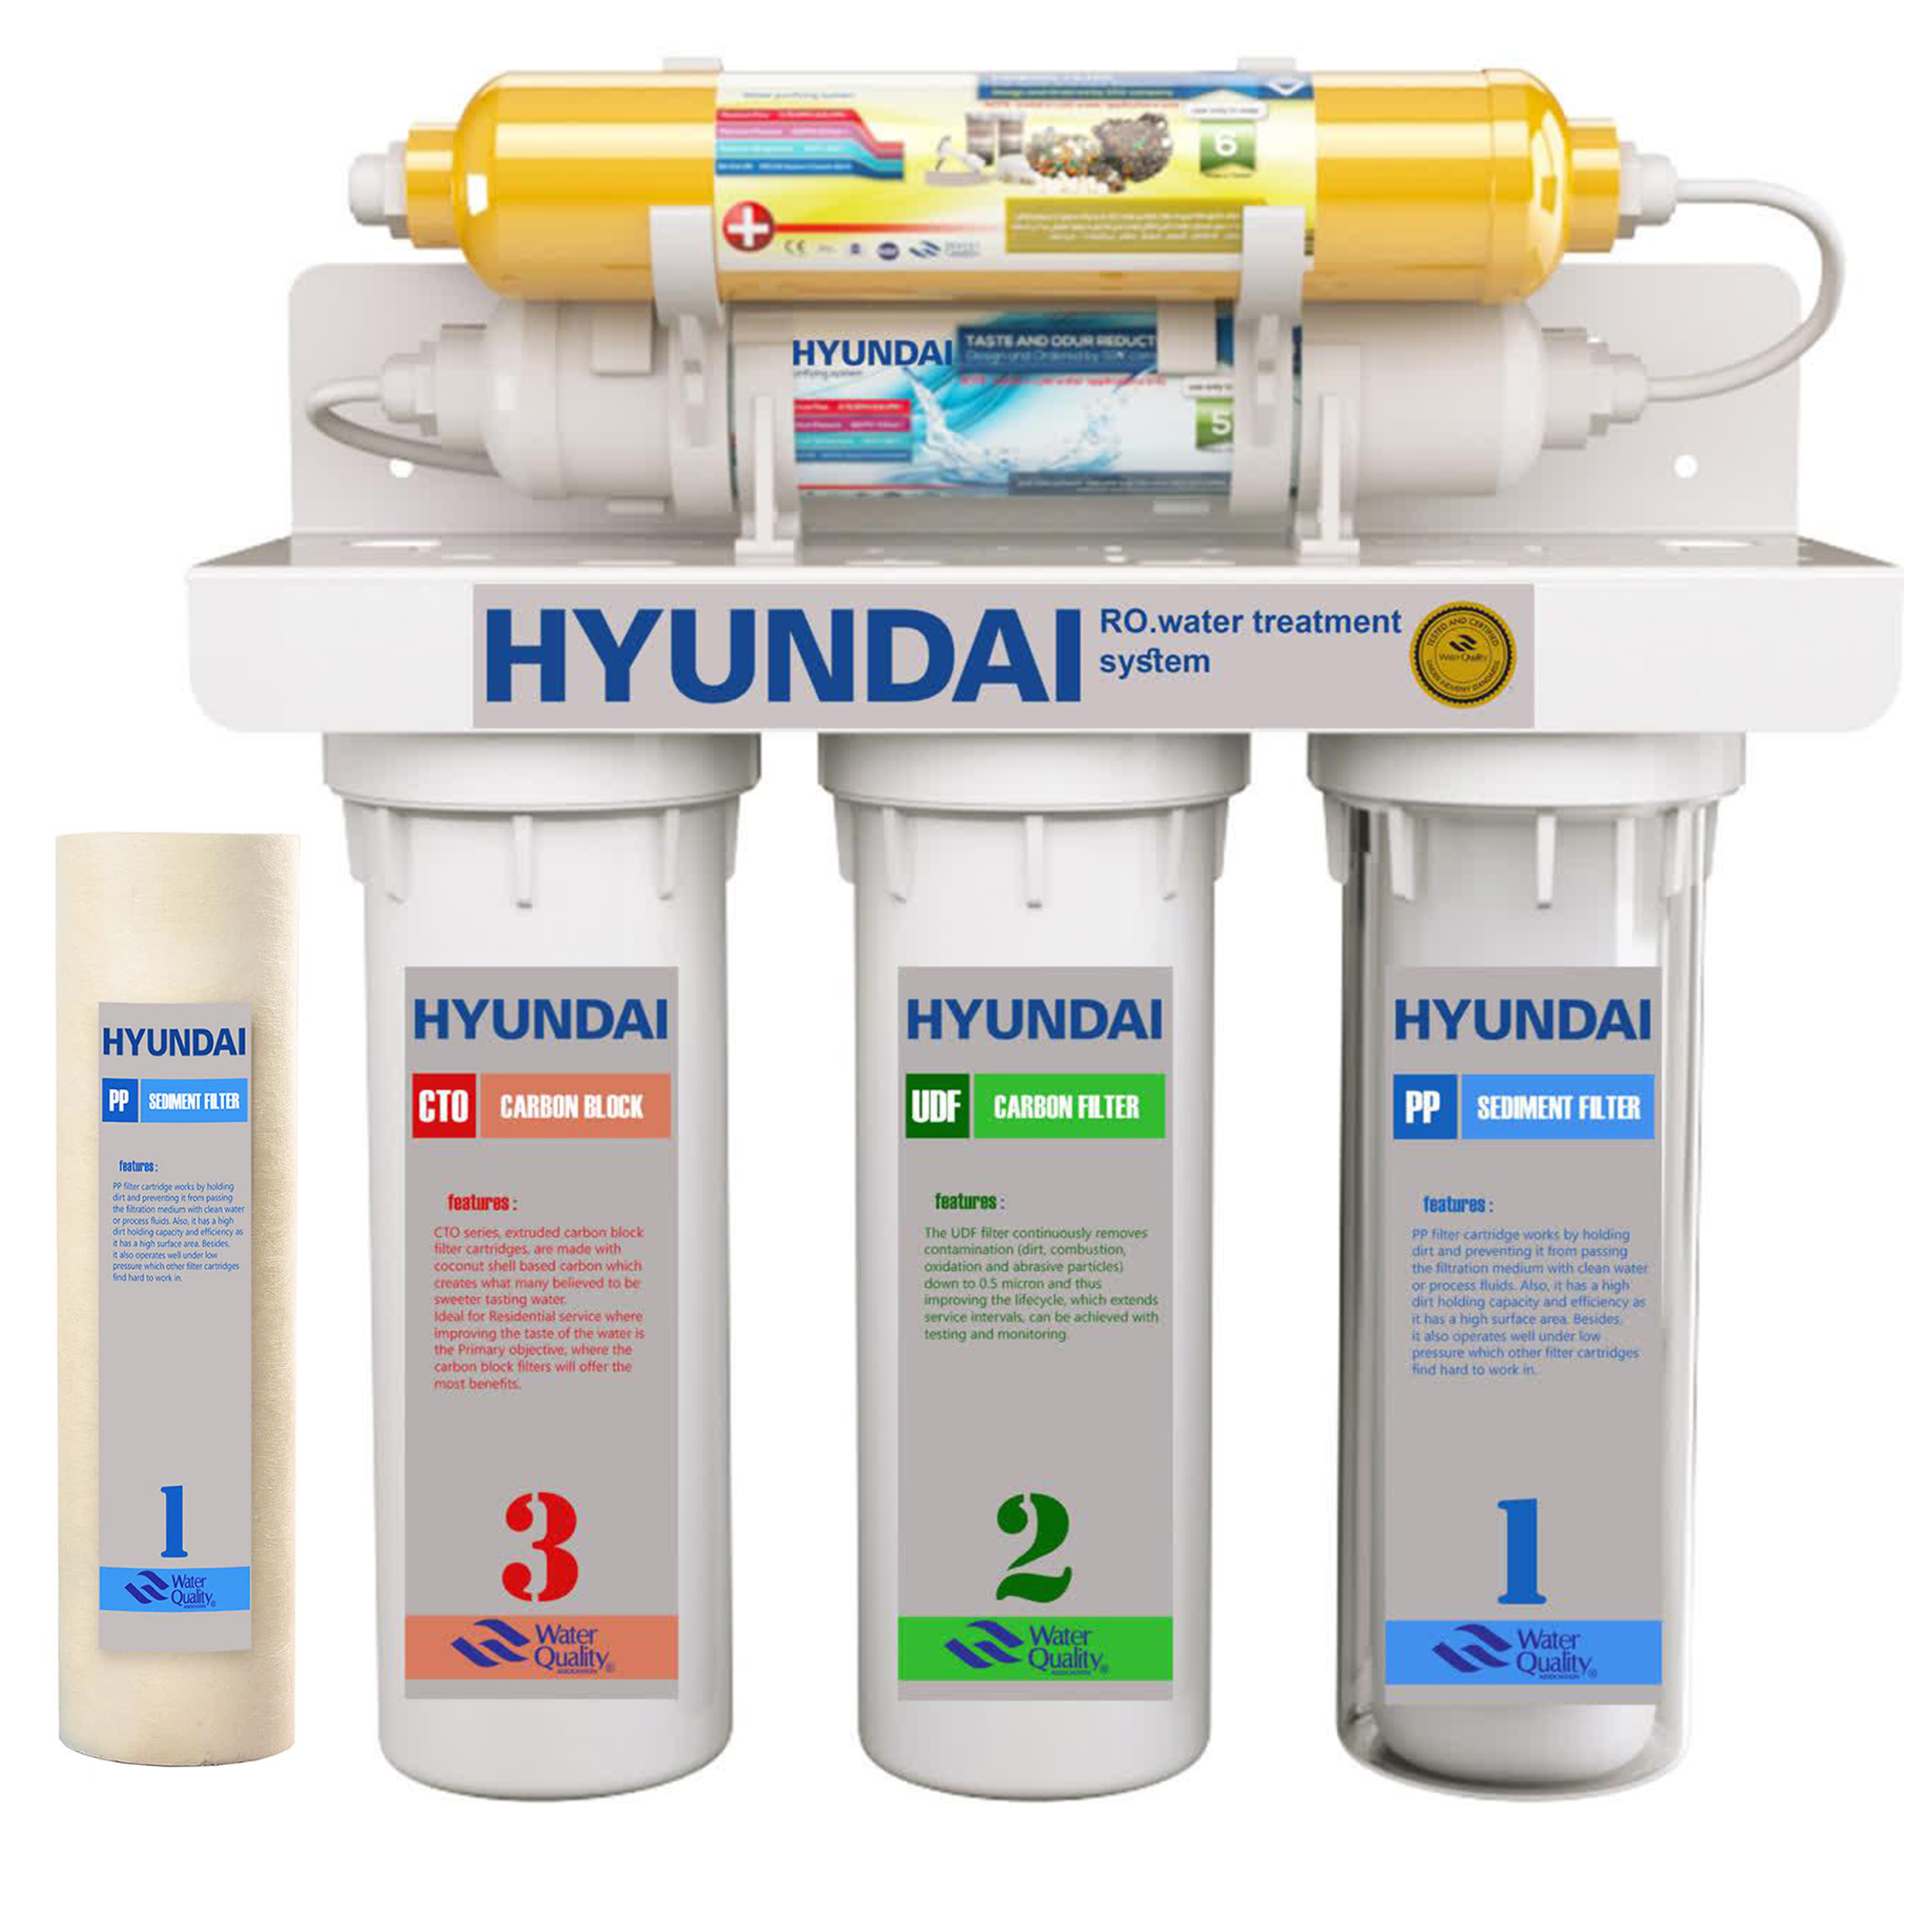 دستگاه تصفیه آب خانگی 5 مرحله مکانیکی هیوندای مدل HU-5s به همراه فیلتر تصفیه آب مدل hu-pp